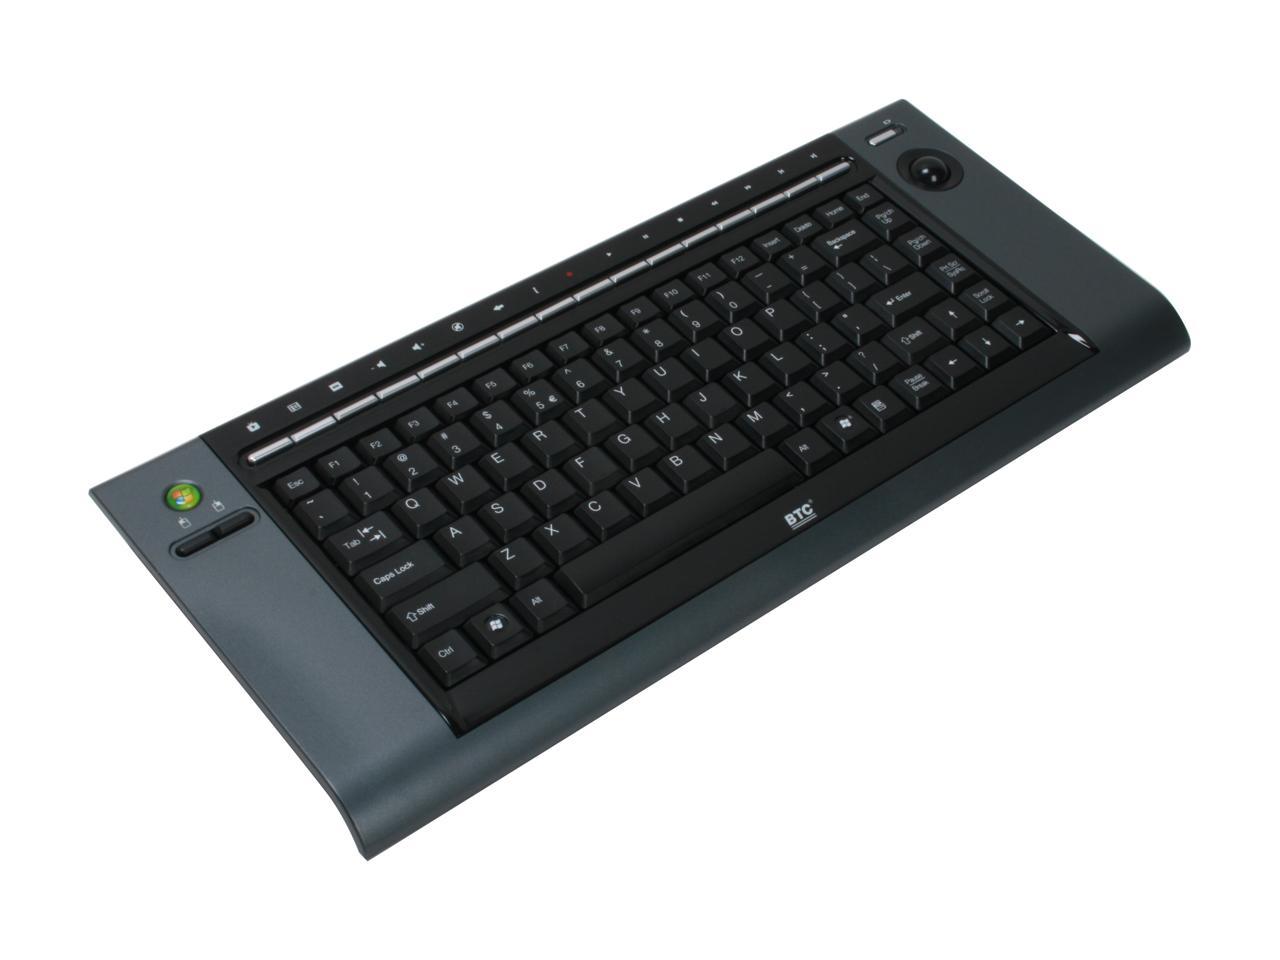 btc 9029urf iii wireless keyboard